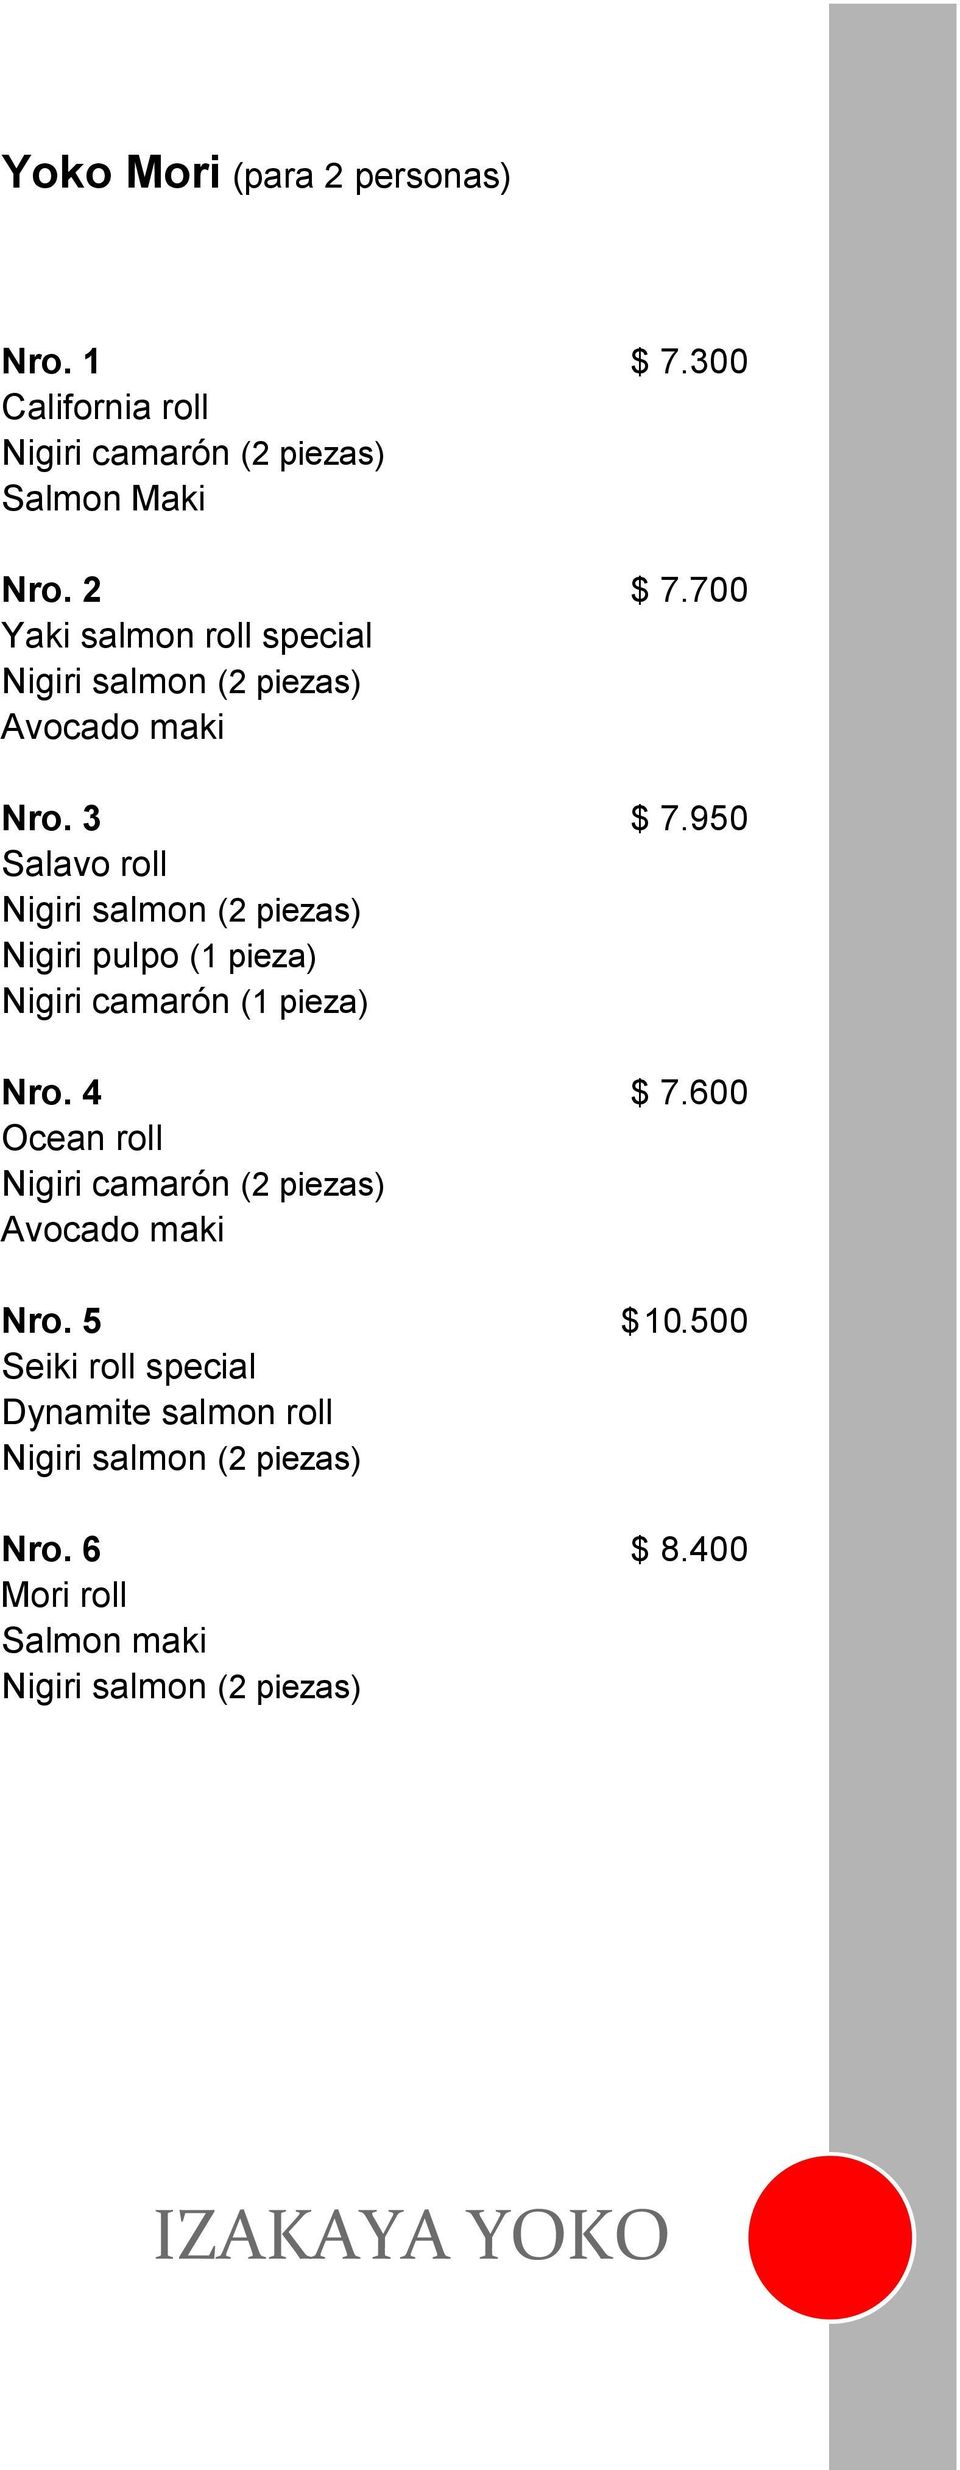 950 Salavo roll Nigiri salmon (2 piezas) Nigiri pulpo (1 pieza) Nigiri camarón (1 pieza) Nro. 4 $ 7.